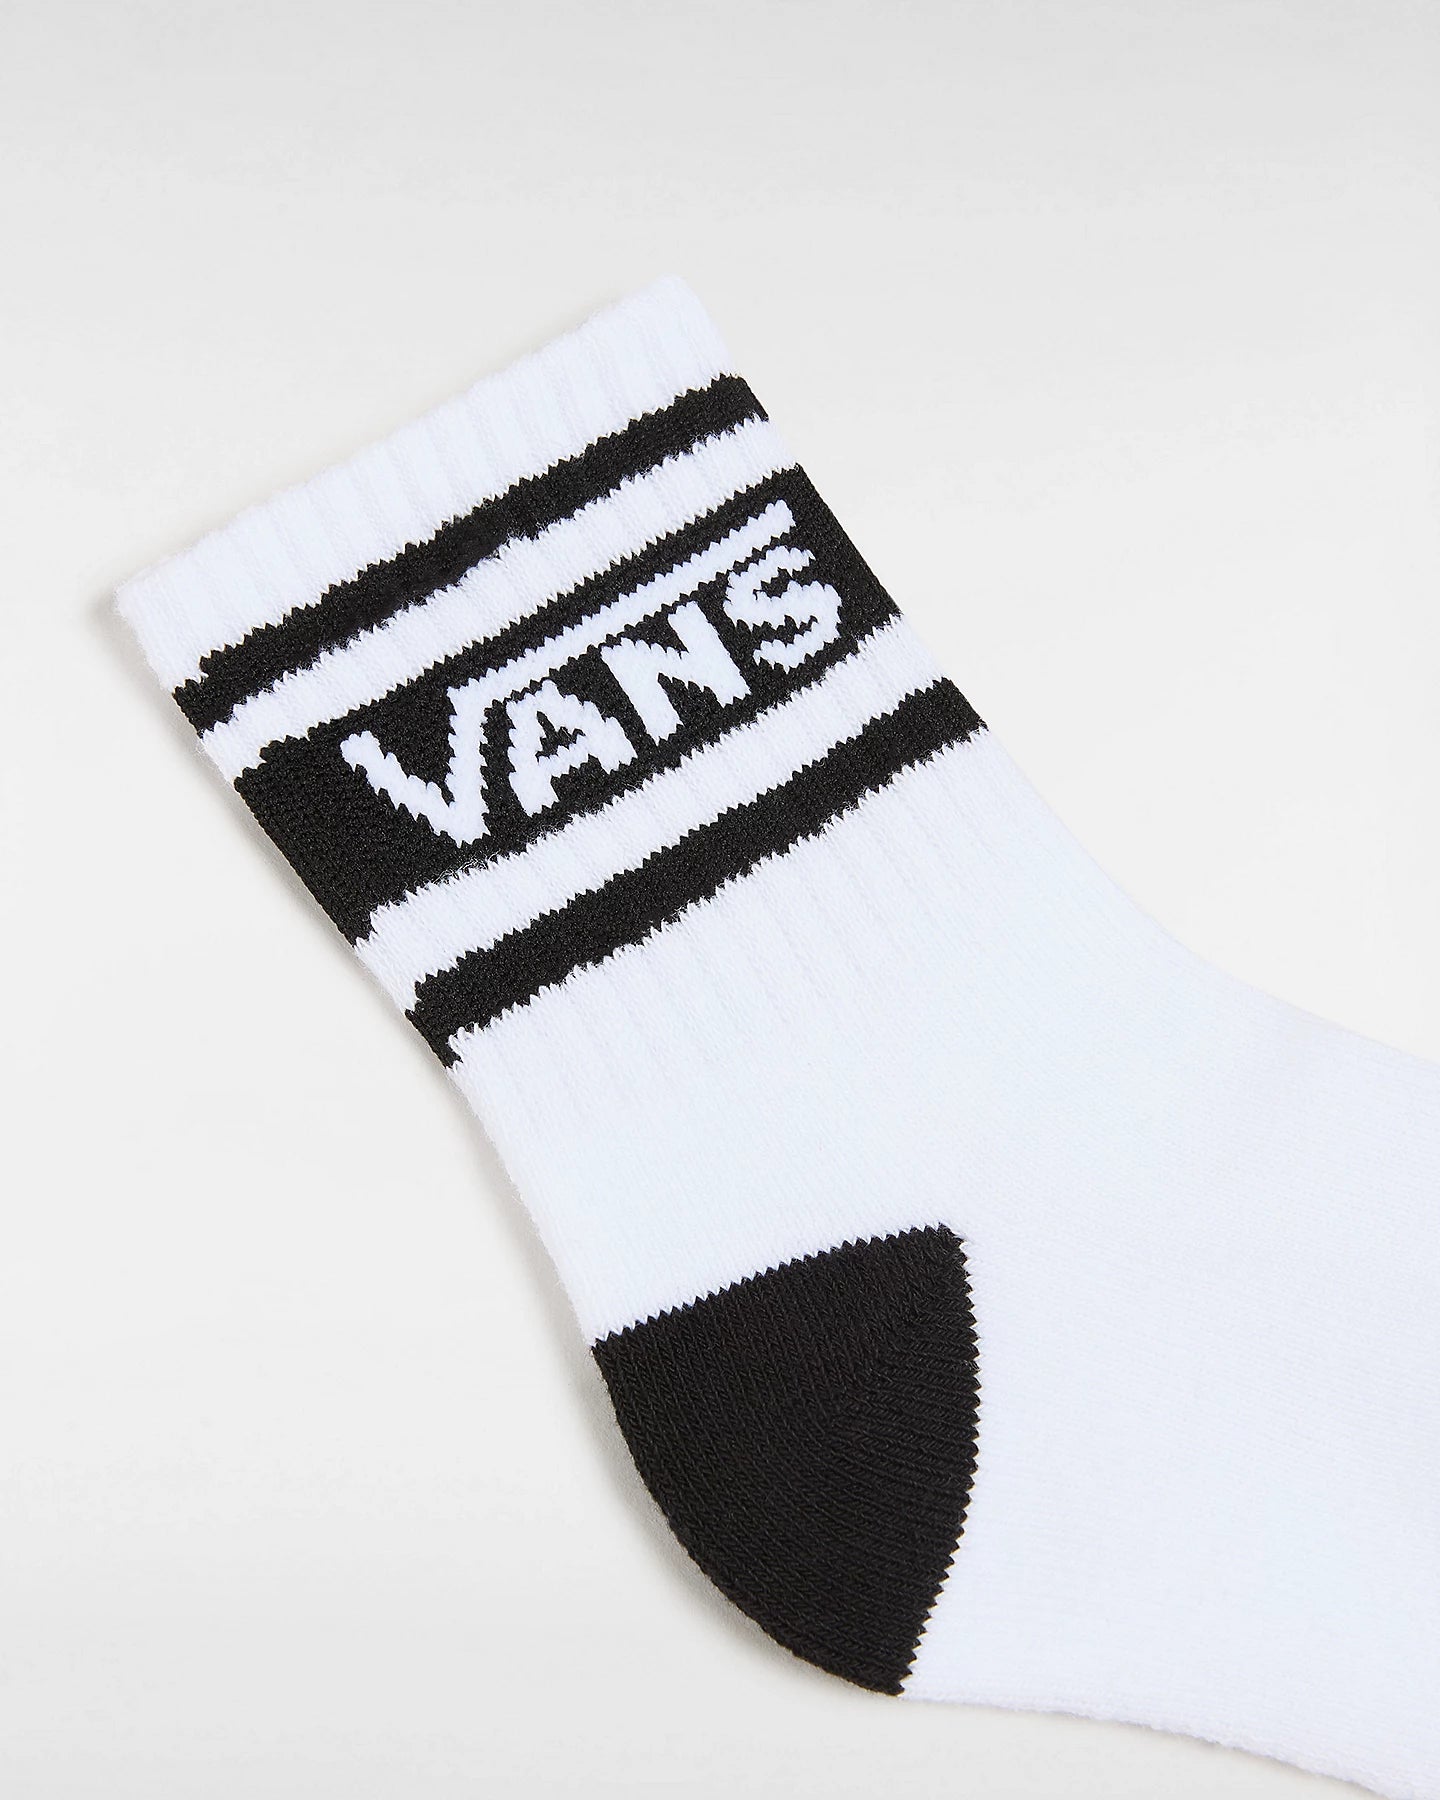 Vans - Drop V Crew Rox Socks